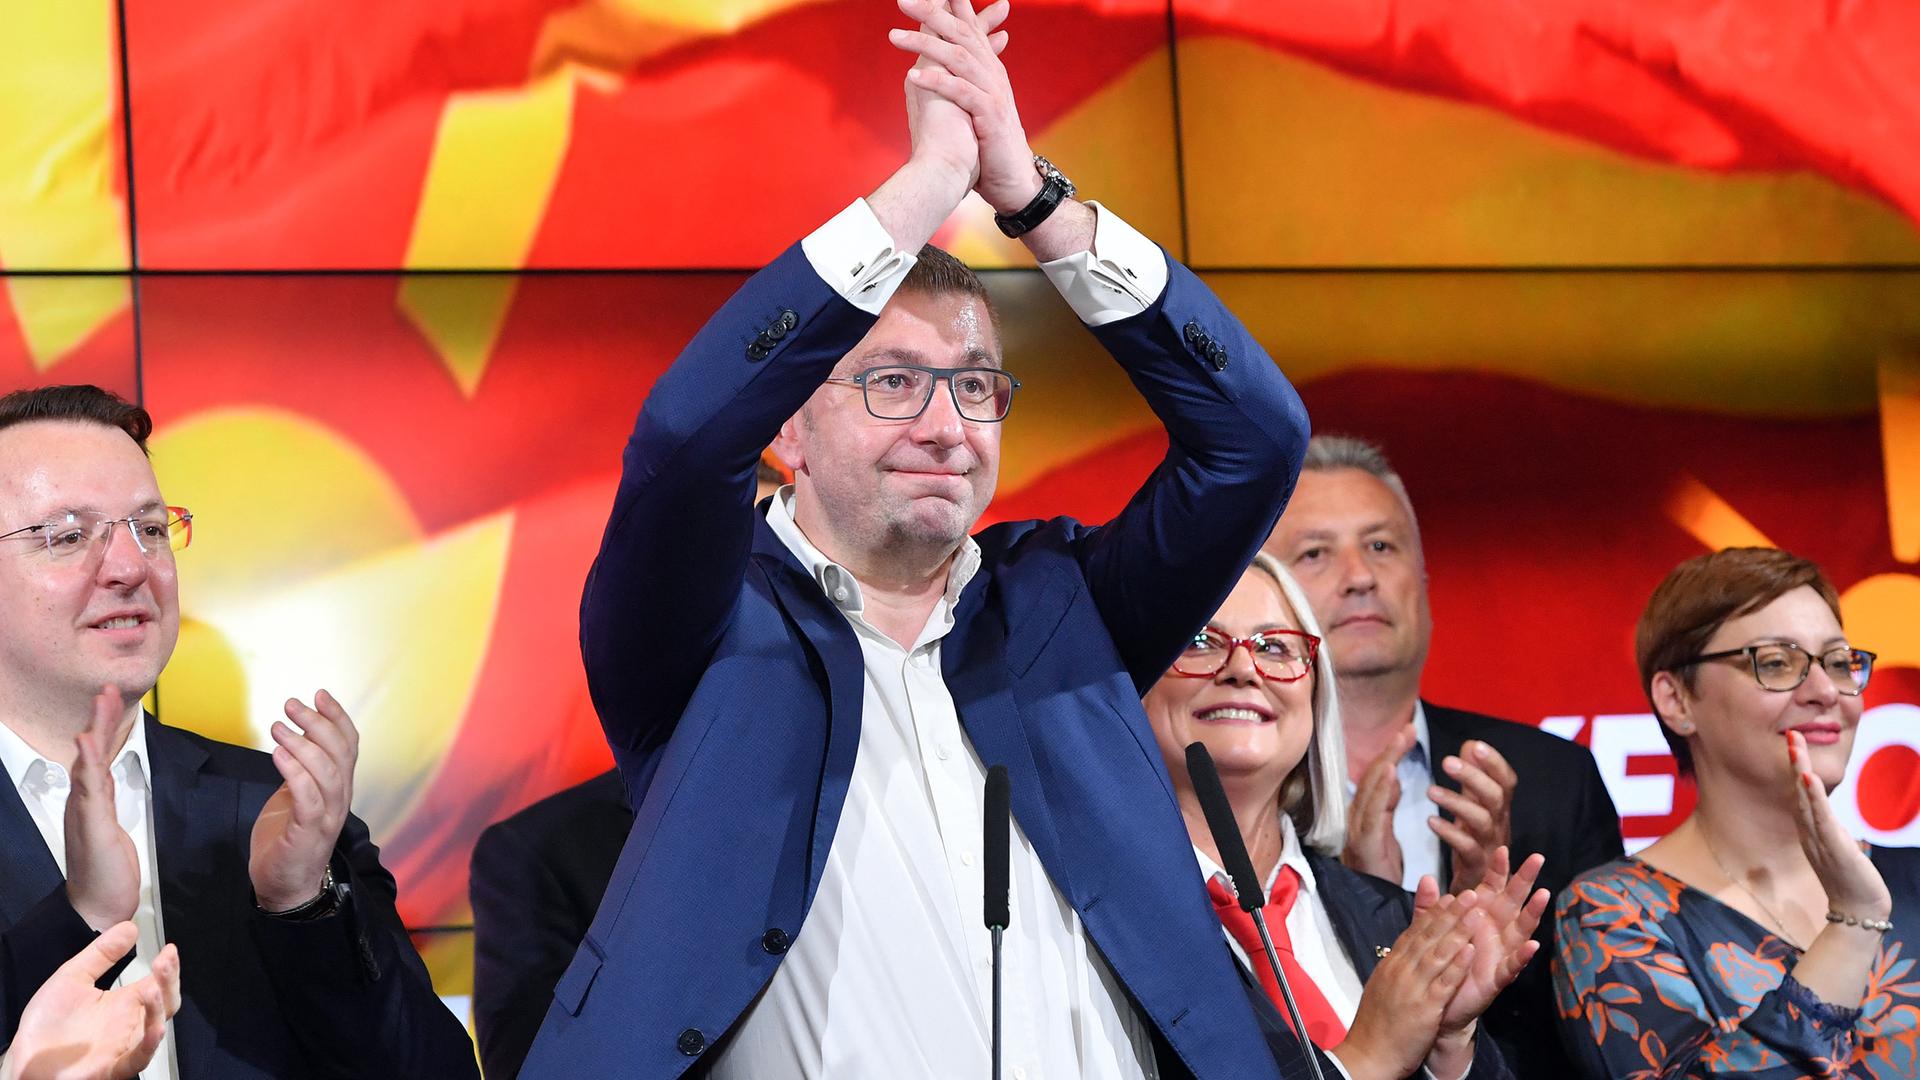 Hiristijan Mickoski mit einer Siegerpose nach der Parlamentswahl in Nordmazedonien